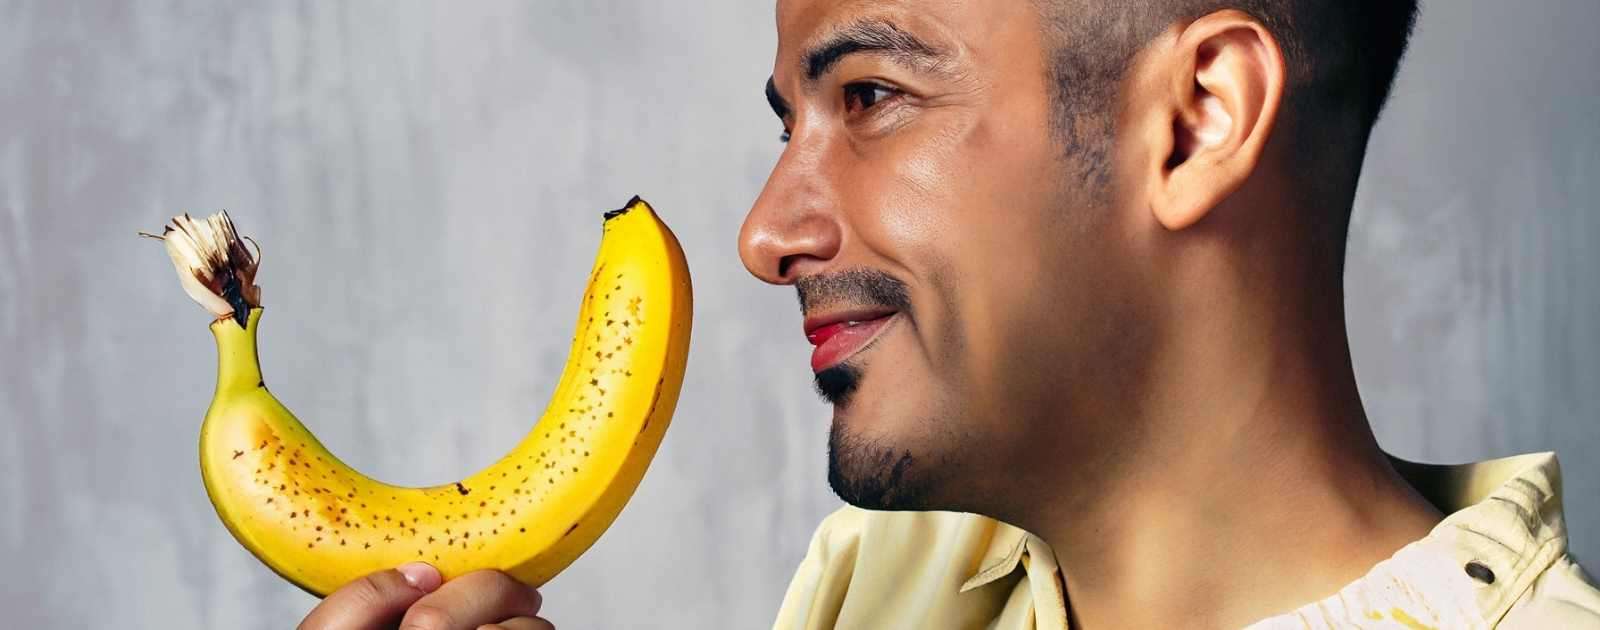 Why Am I Craving Bananas? [7 Reasons Why]